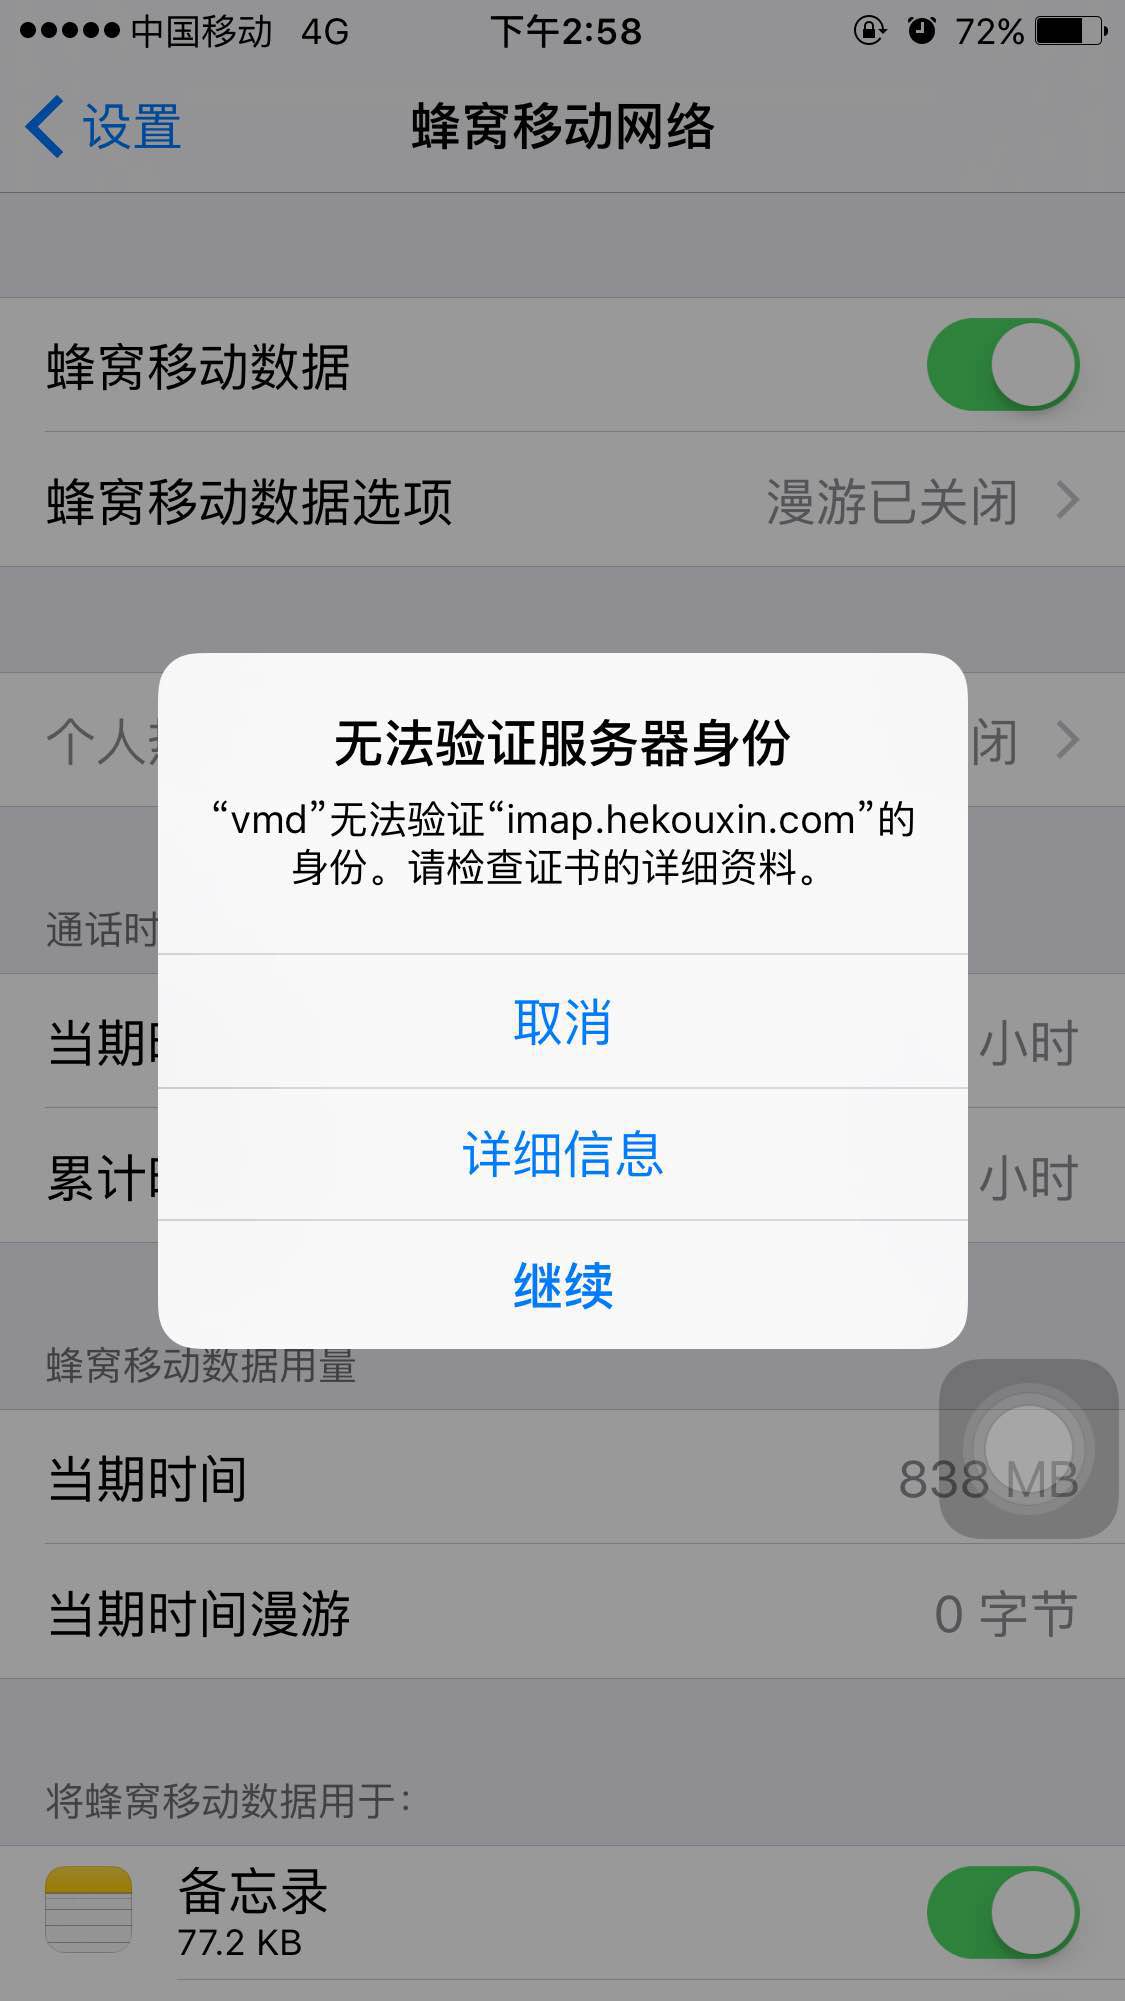 【已解决】iPhone6中无法验证服务器身份 vmd 无法验证身份 imap.hekouxin.com